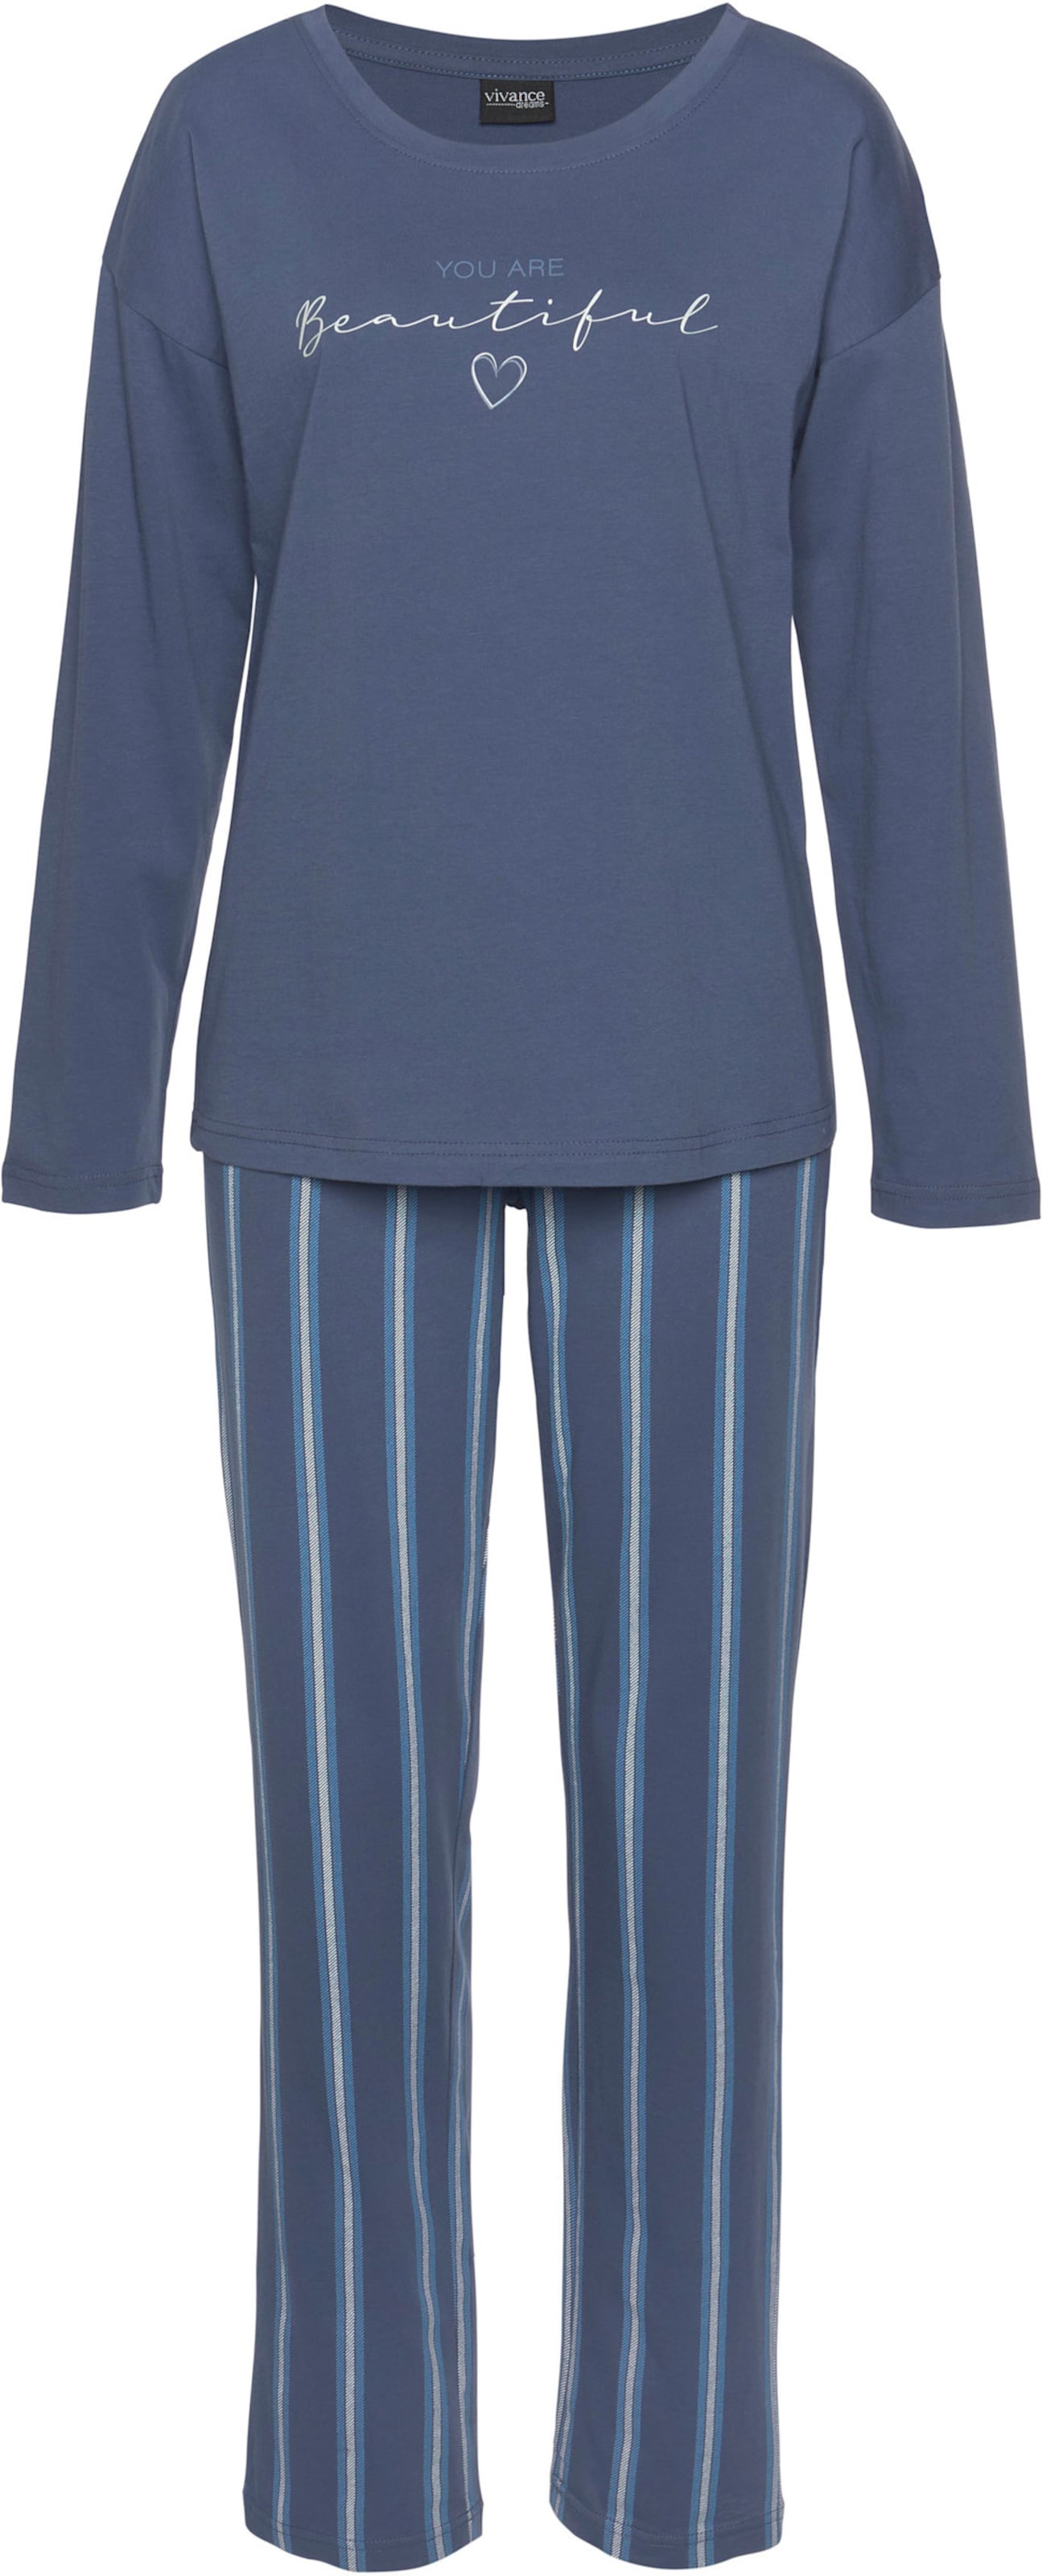 Pyjama in blau-gestreift von Vivance Dreams